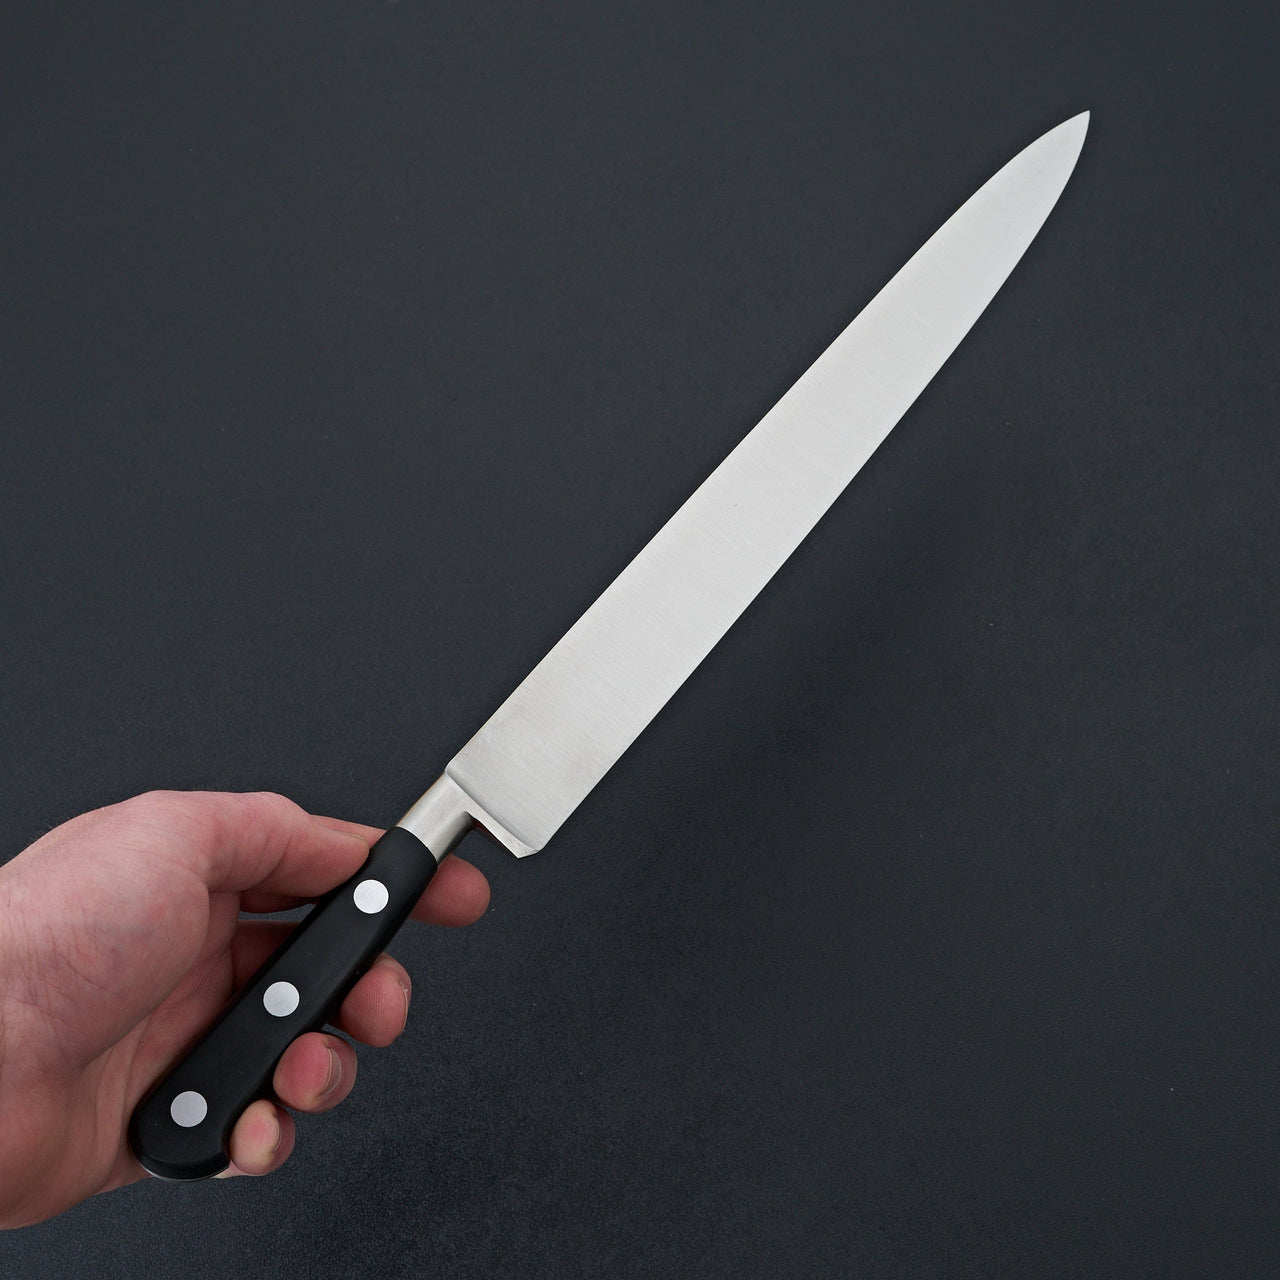 K Sabatier Authentique 12" Slicer Stainless-Knife-K Sabatier-Carbon Knife Co